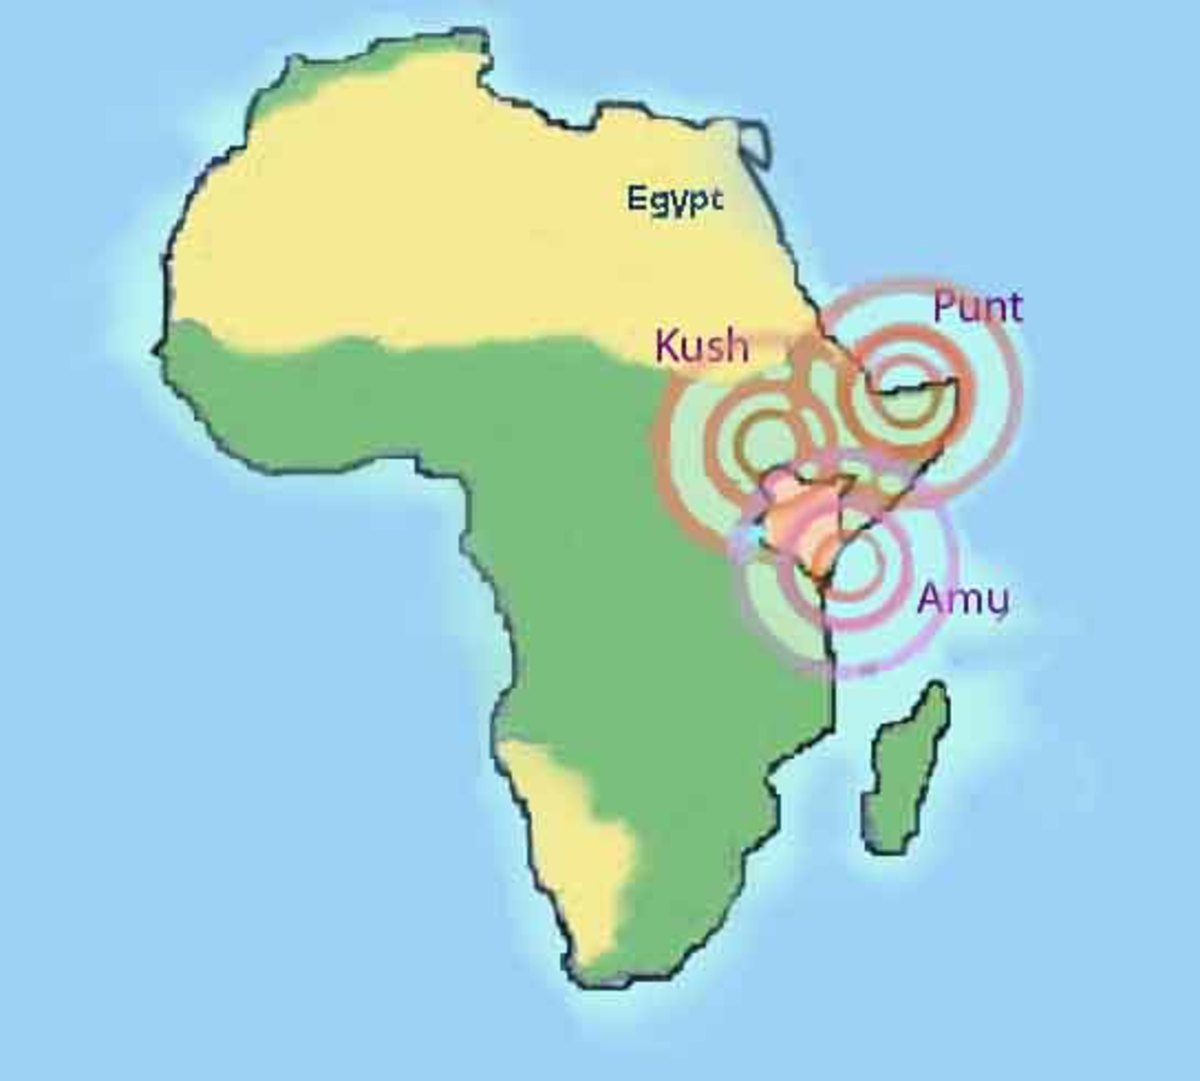 The three neghbouring states of Kush, Punt and Amu